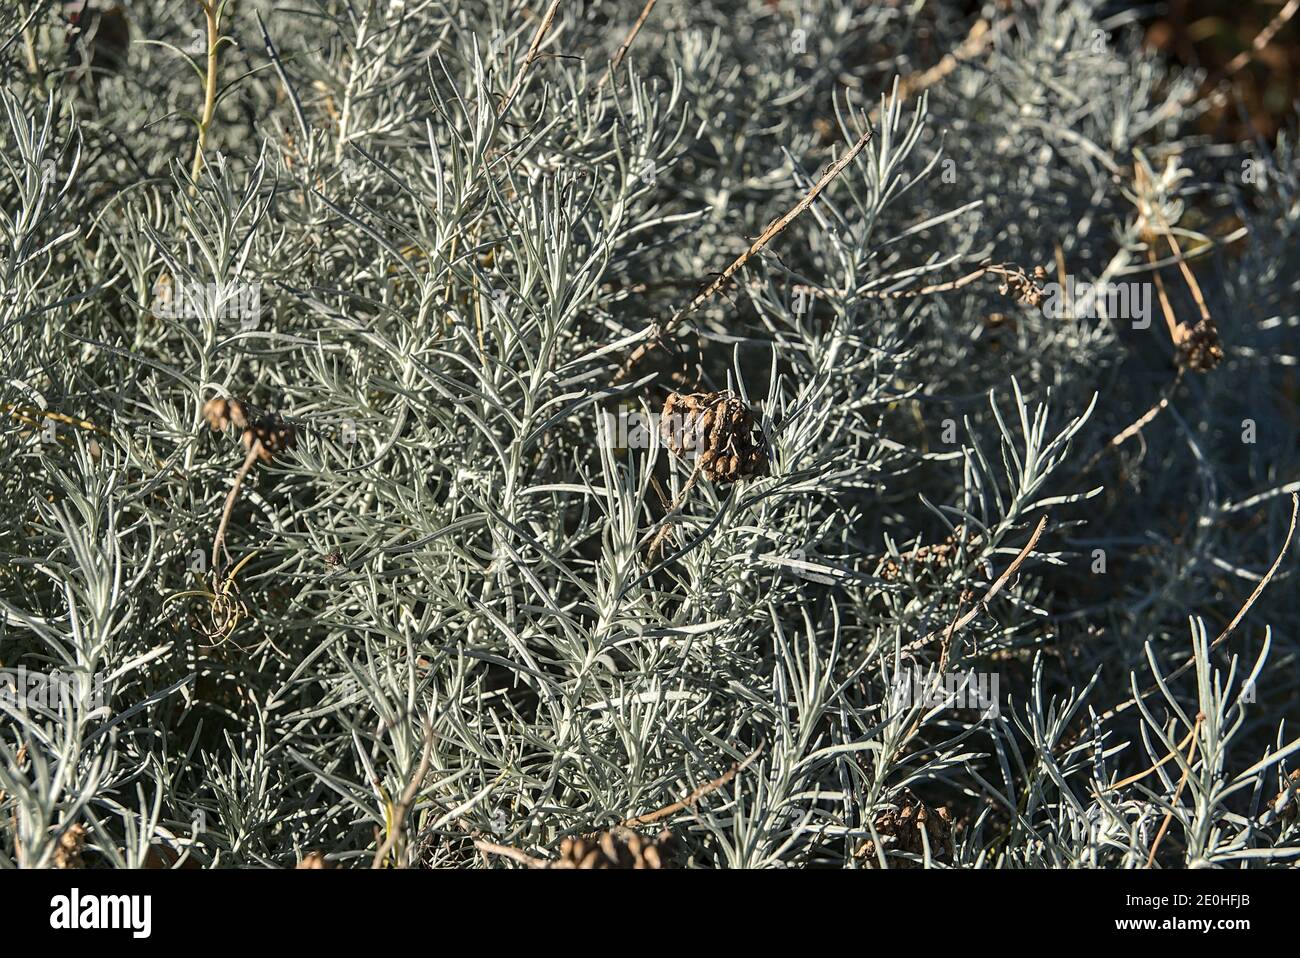 Magnifique fond de sauge argentée (Artemisia cana). Arbuste Evergreen aux feuilles aromatiques argentées et aux fleurs jaunes discrètes en automne Banque D'Images